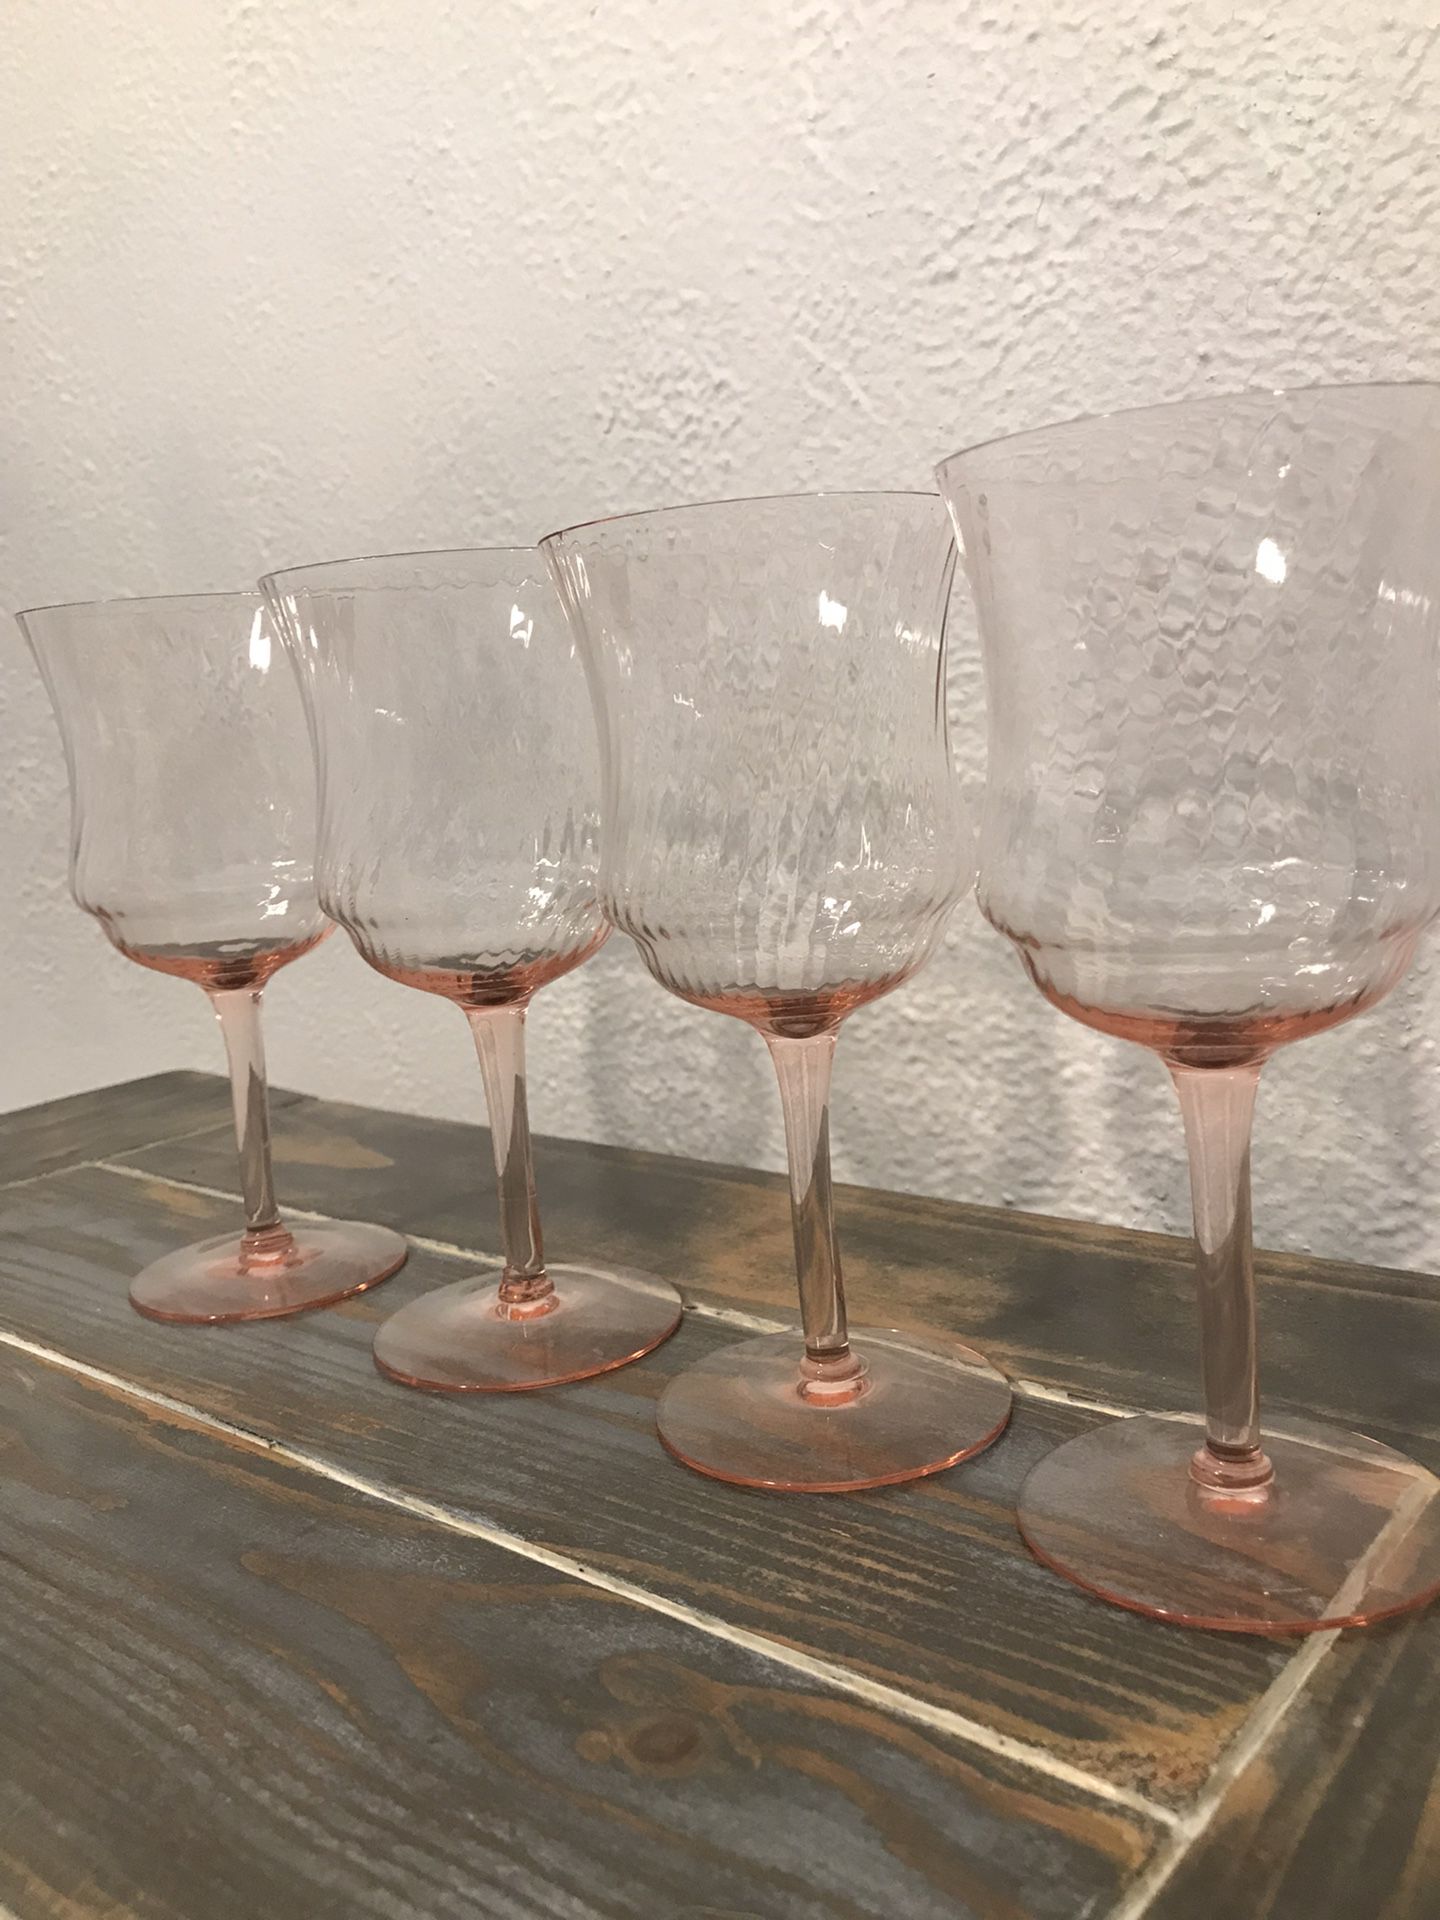 Vintage, Pink, Depression Wine Glasses